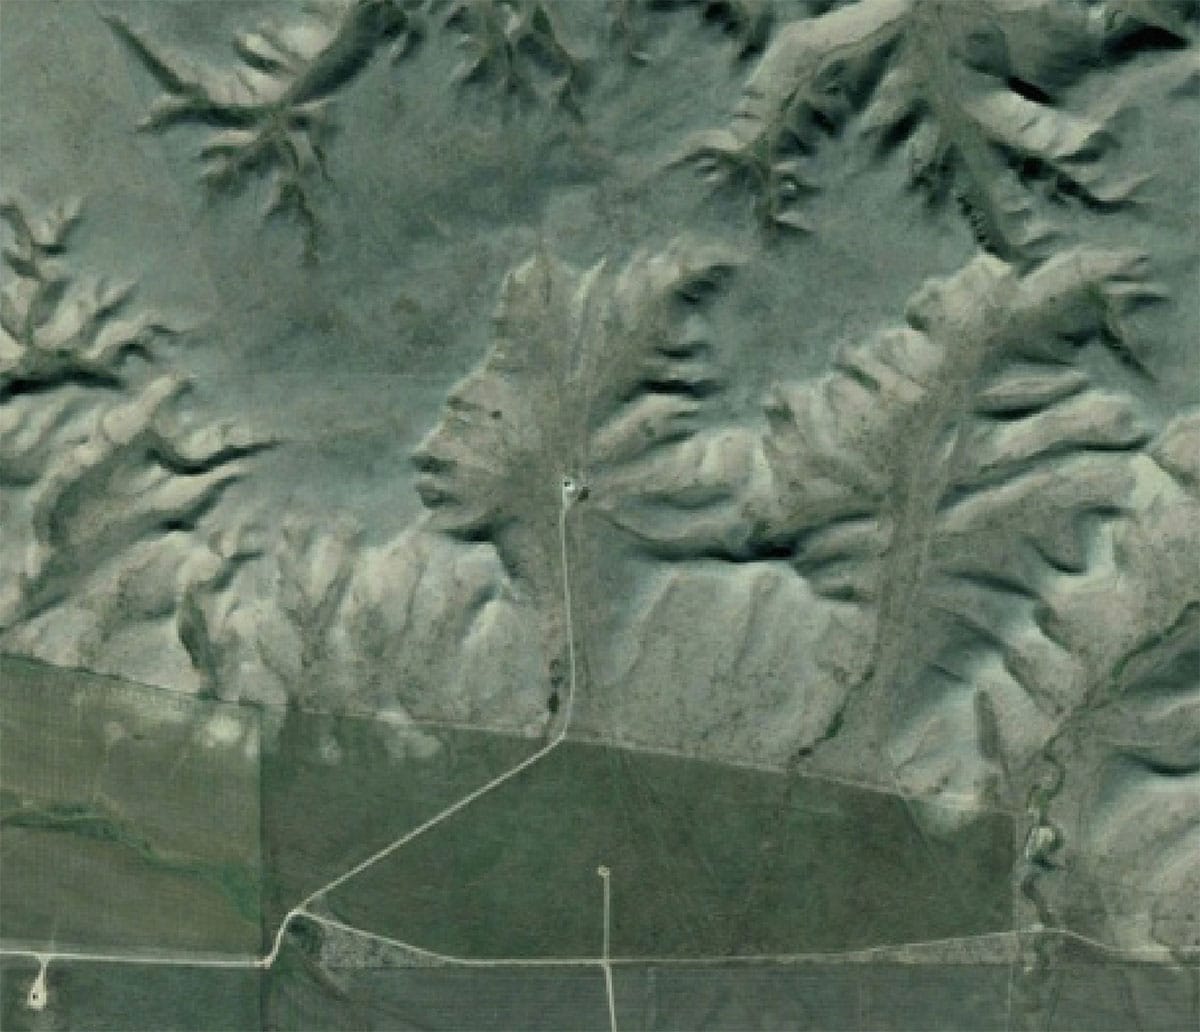 GfA – Studie des Monats: Google Earth, Gesichter und andere Strukturen